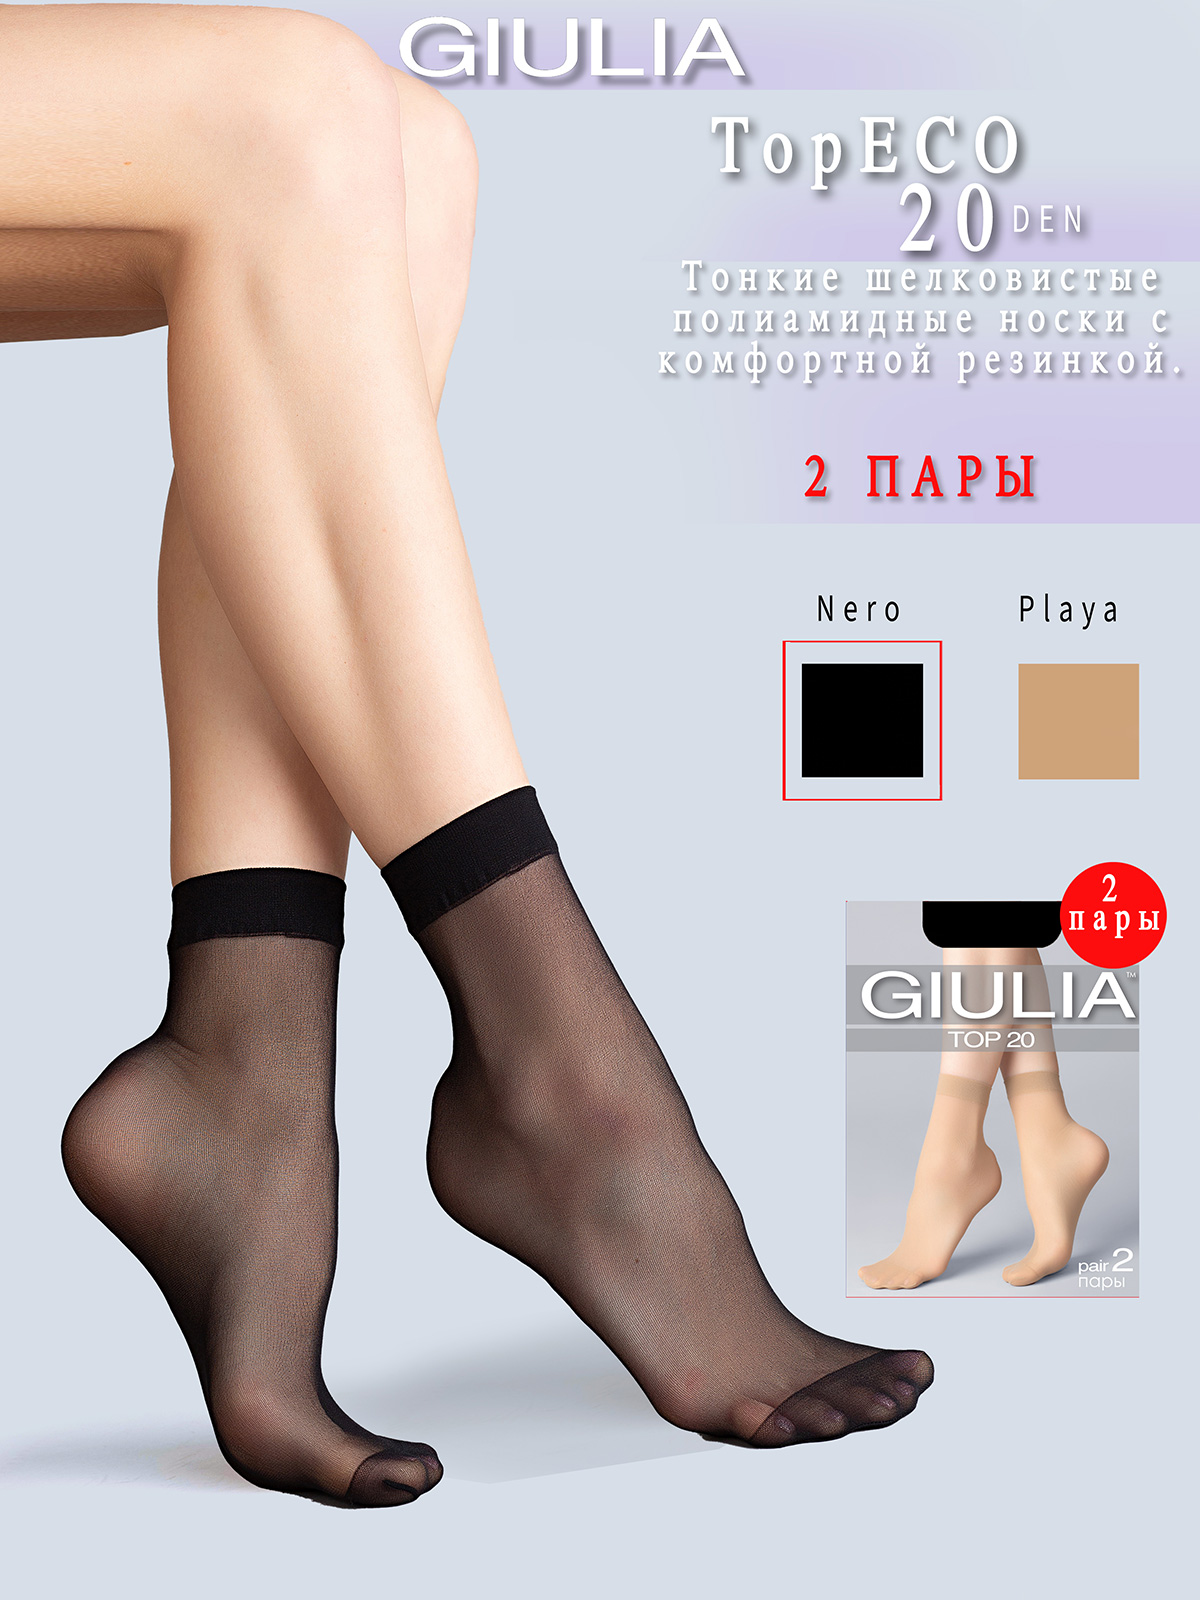 Комплект носков женских Giulia TOP ECO 20 черных one size, 2 пары